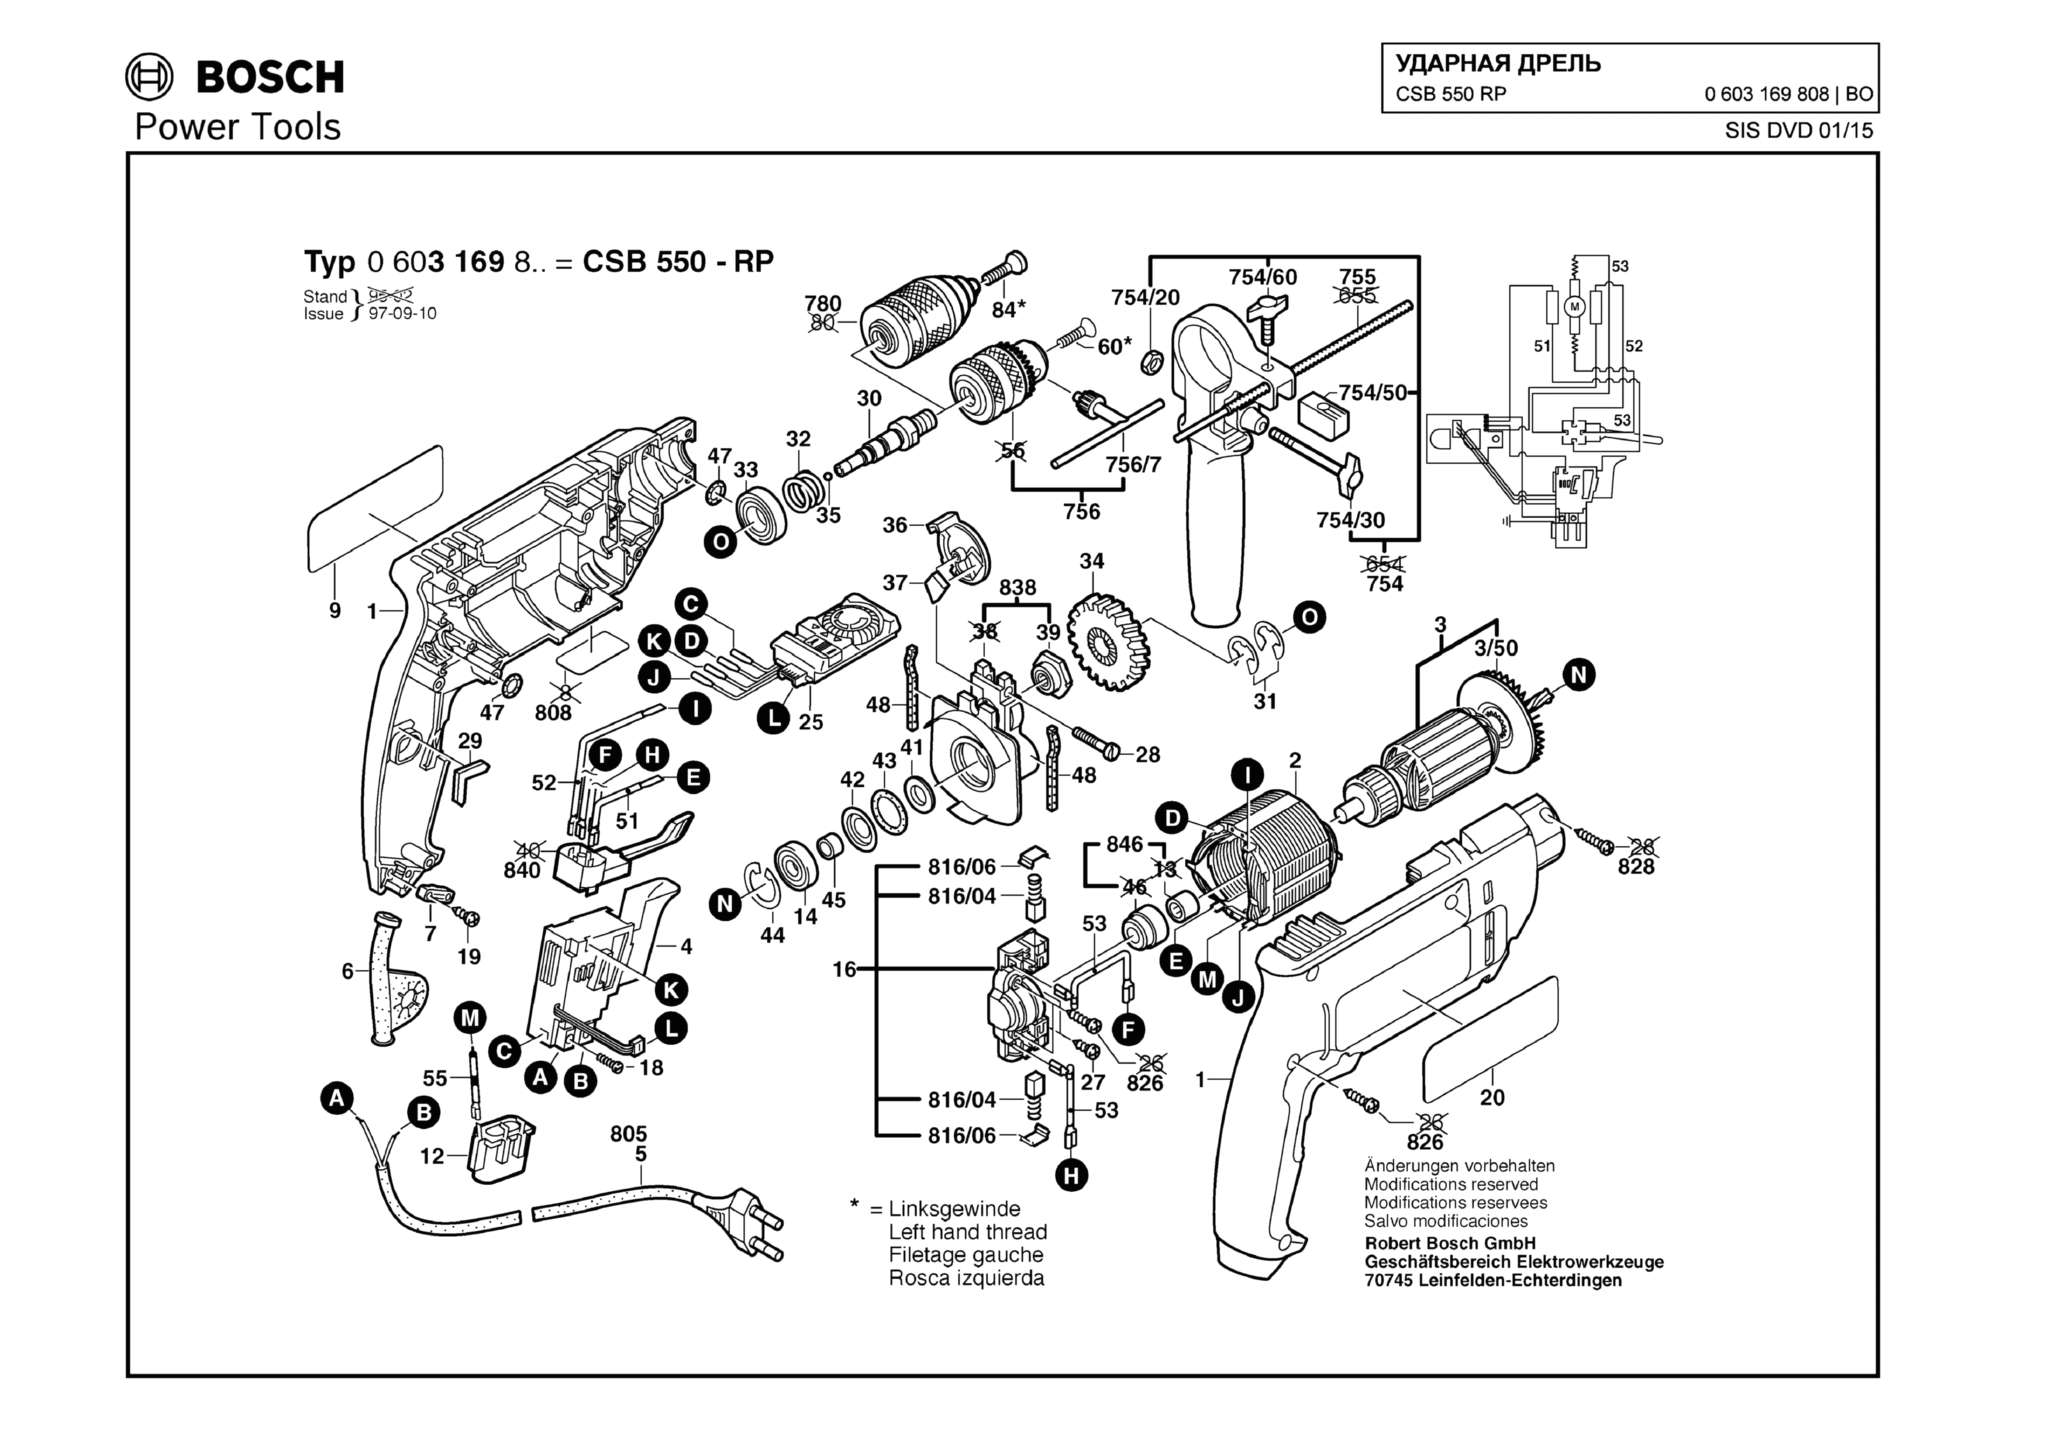 Запчасти, схема и деталировка Bosch CSB 550 RP (ТИП 0603169808)